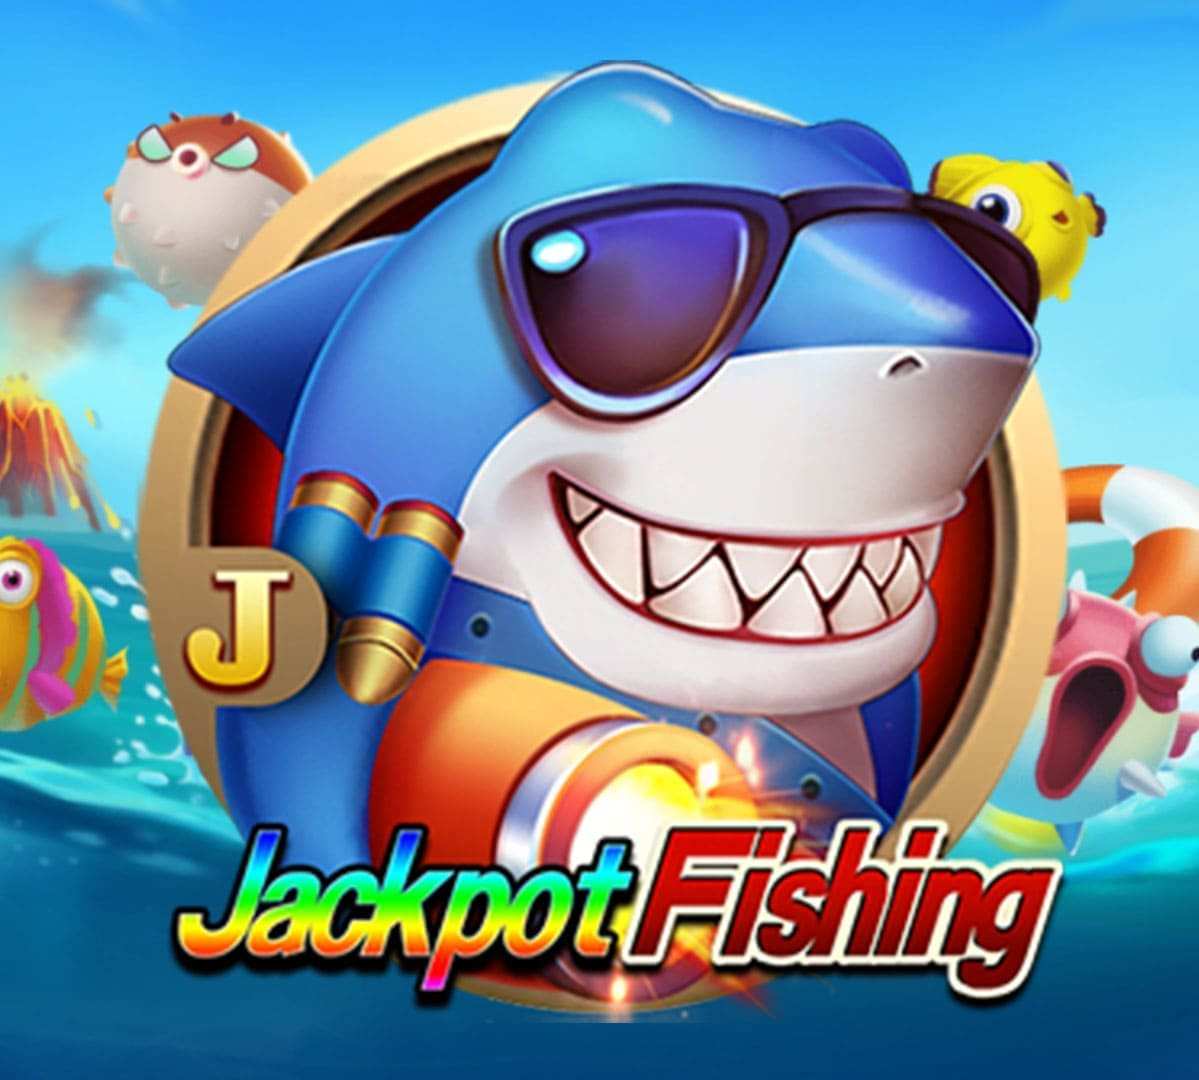 bonus99 jackpot-fishing-1